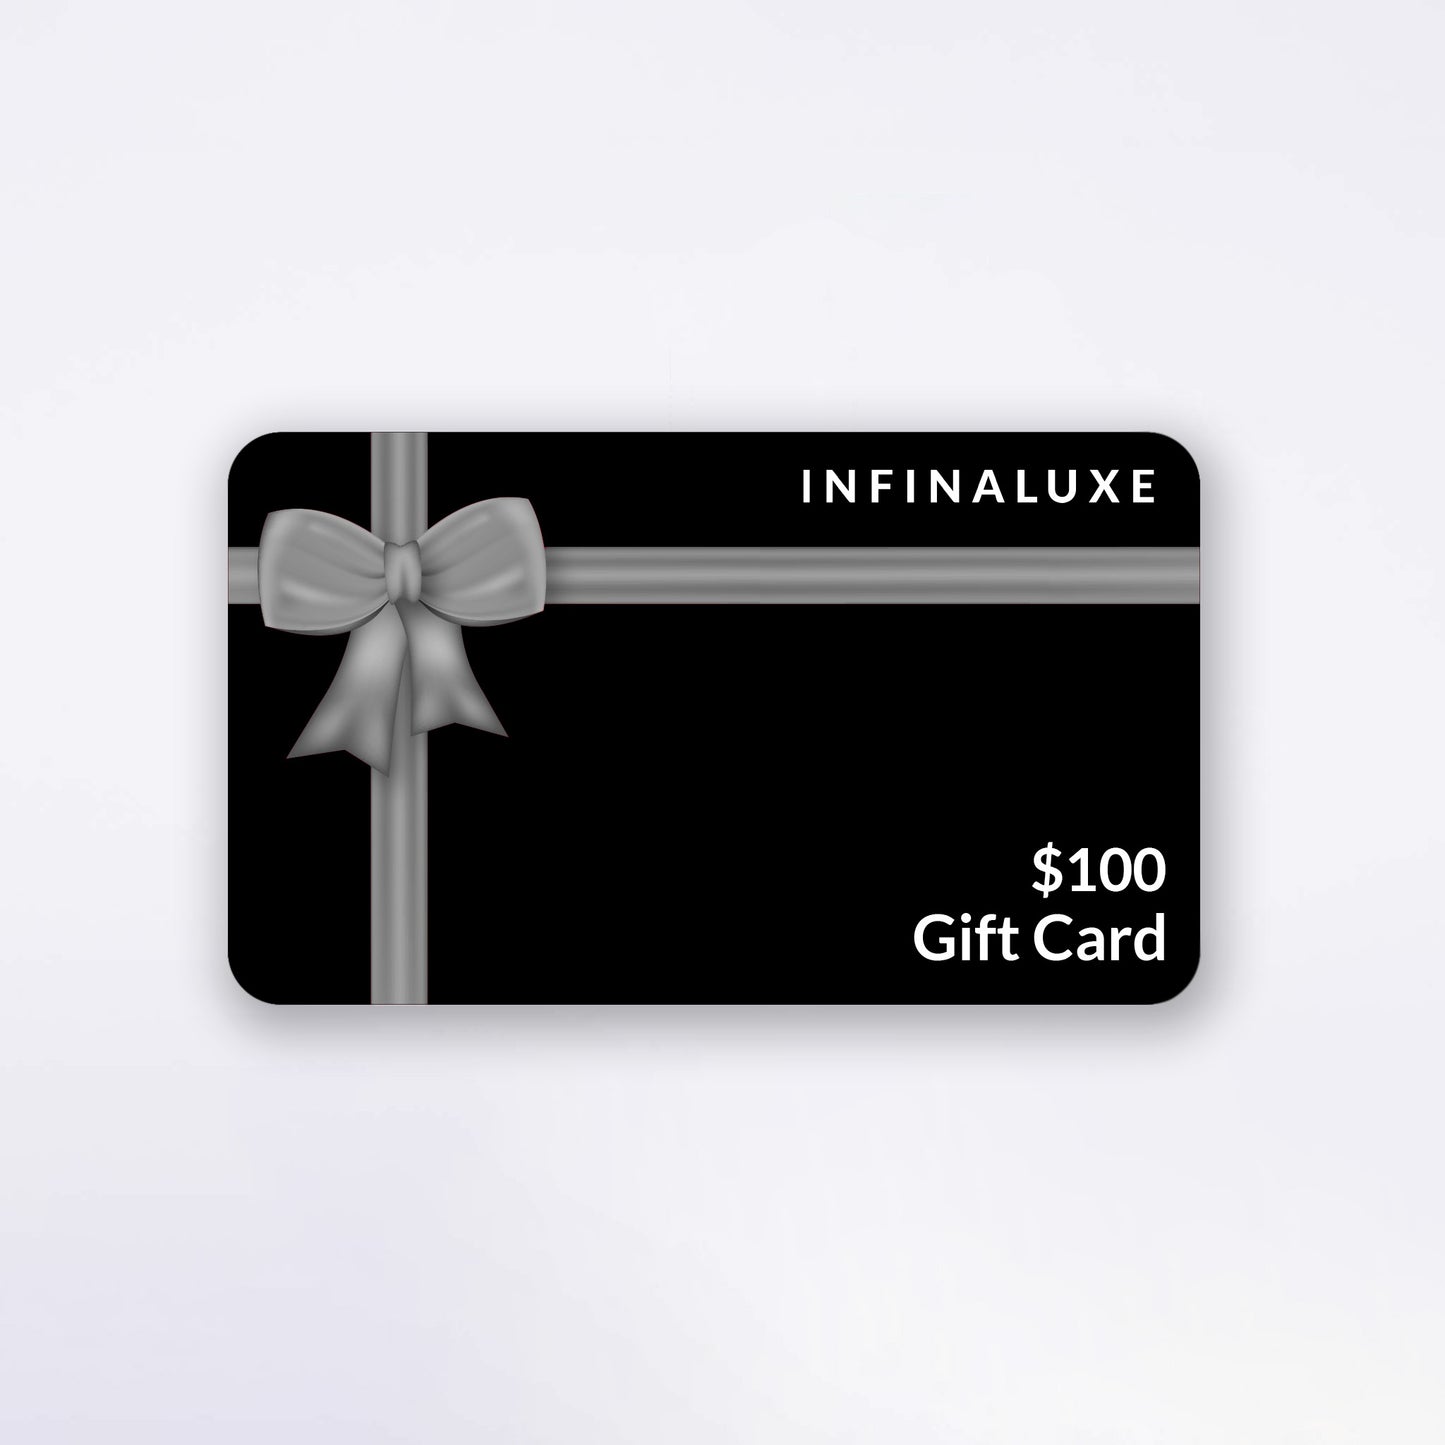 Infinaluxe Gift Card